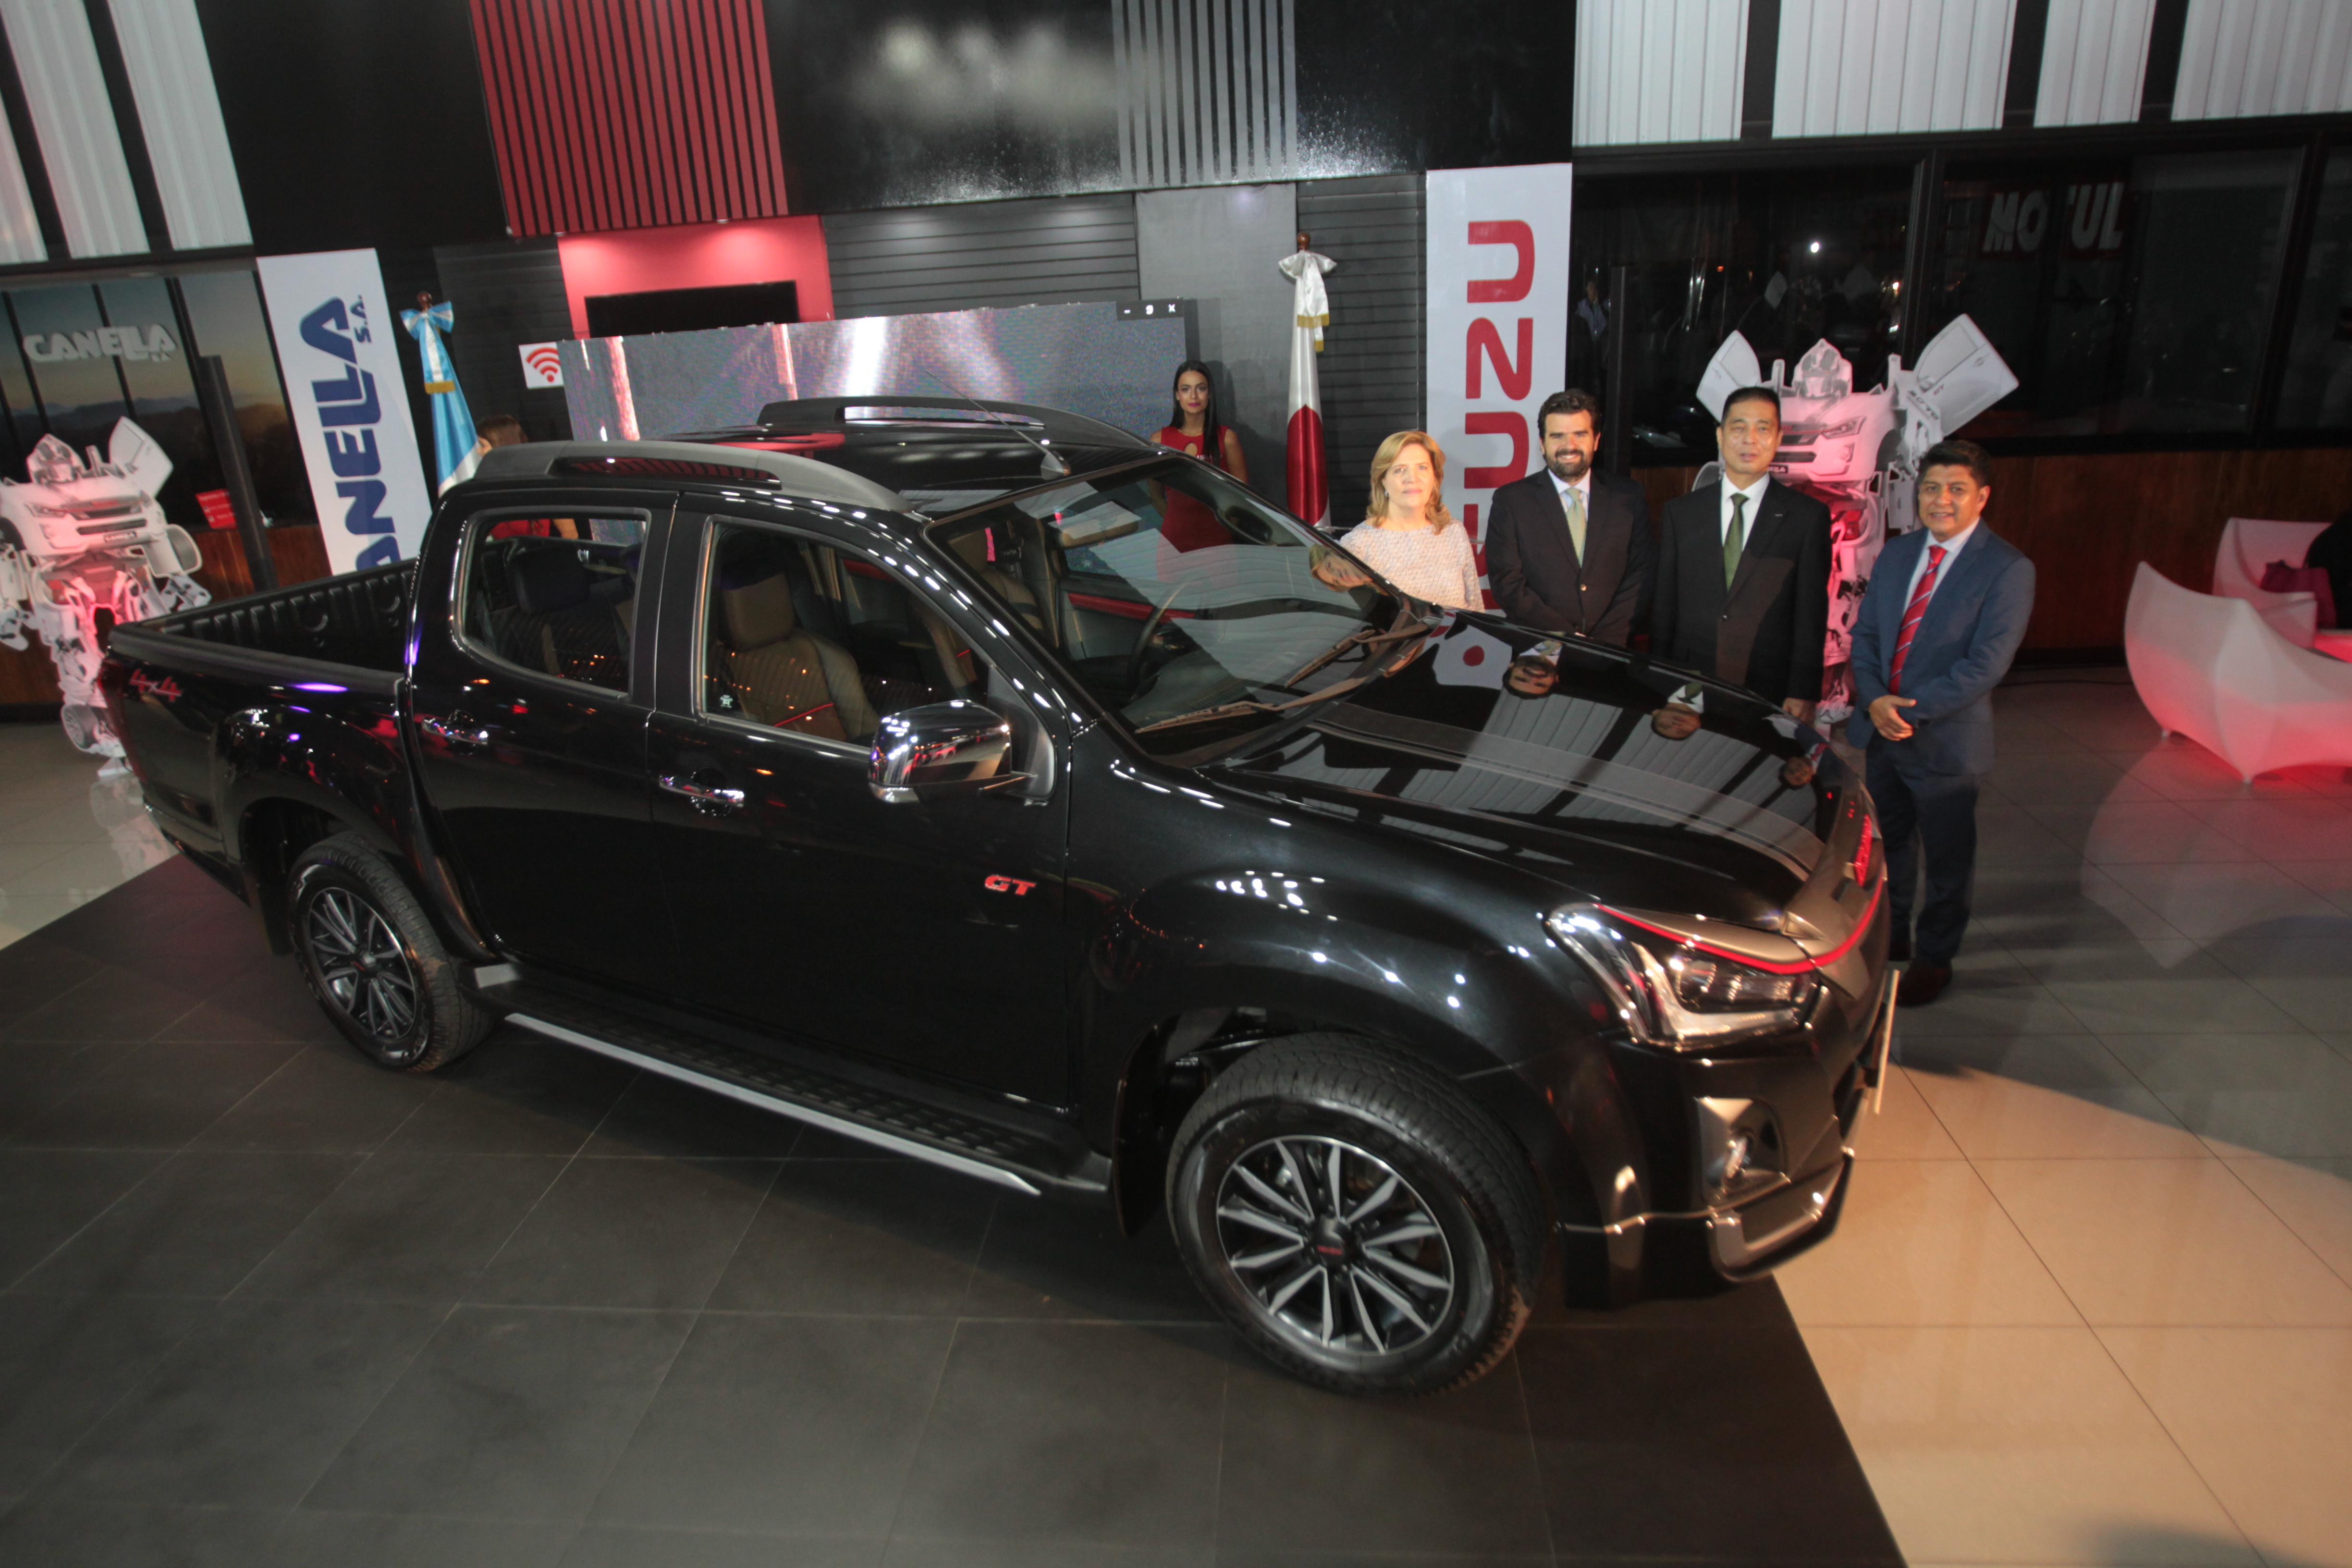 Directivos de Canella presentaron la edición 2020 del pickup Isuzu D-MAX. 
Foto Norvin Mendoza